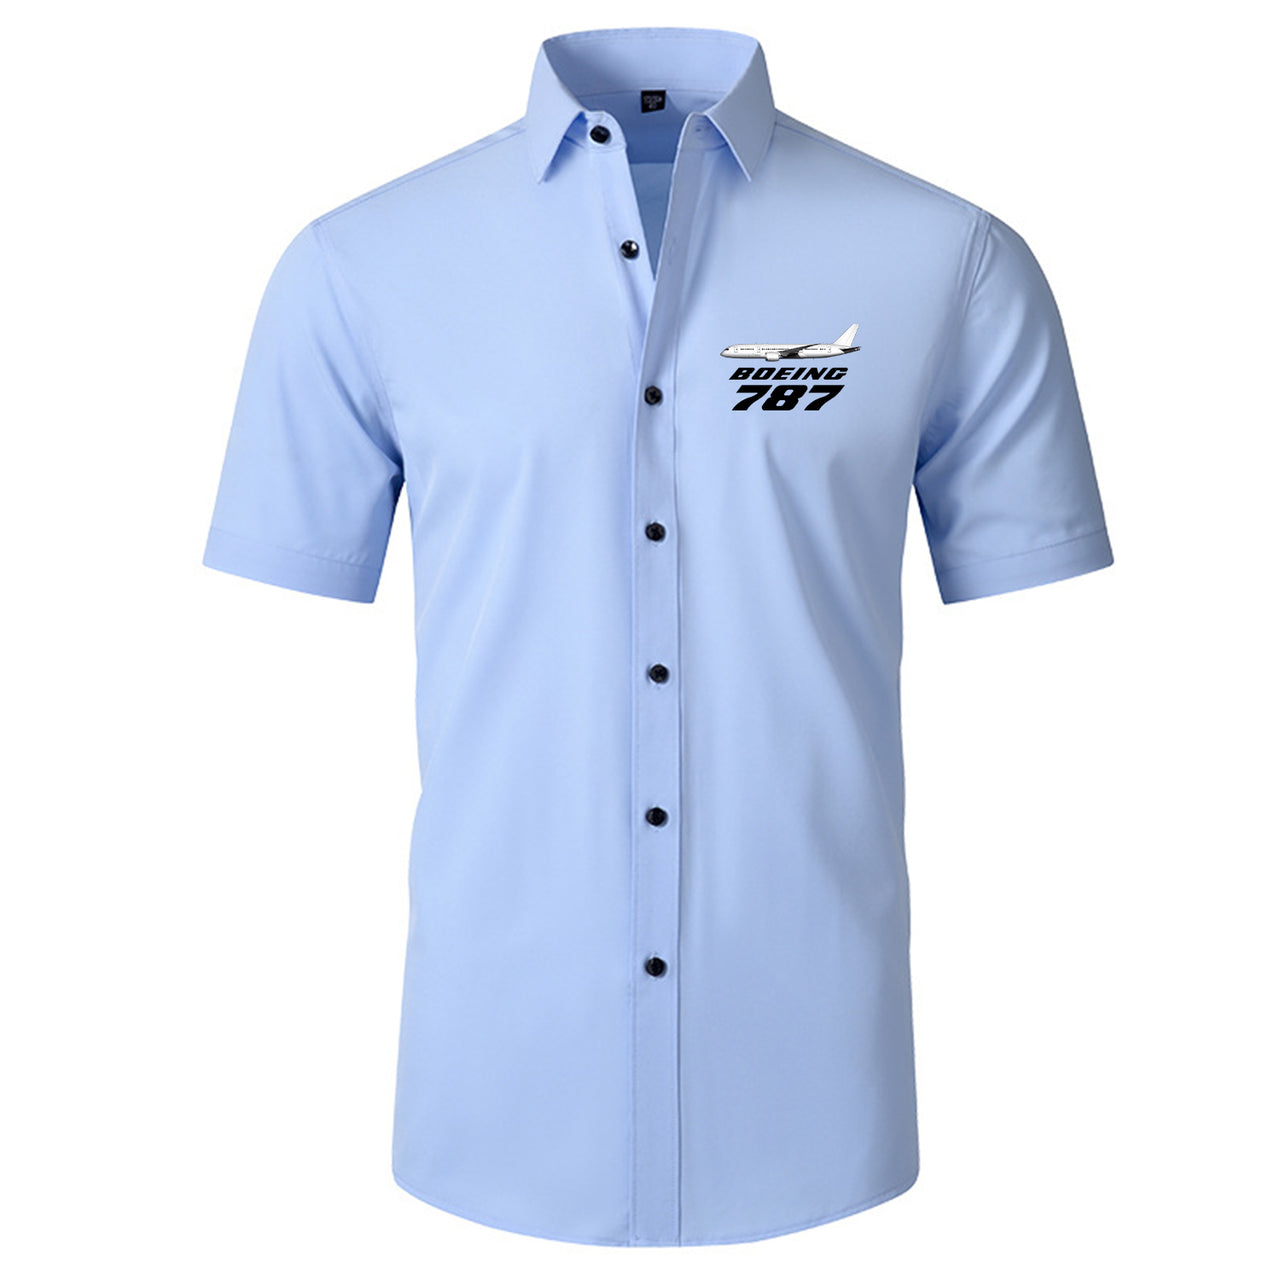 The Boeing 787 Designed Short Sleeve Shirts